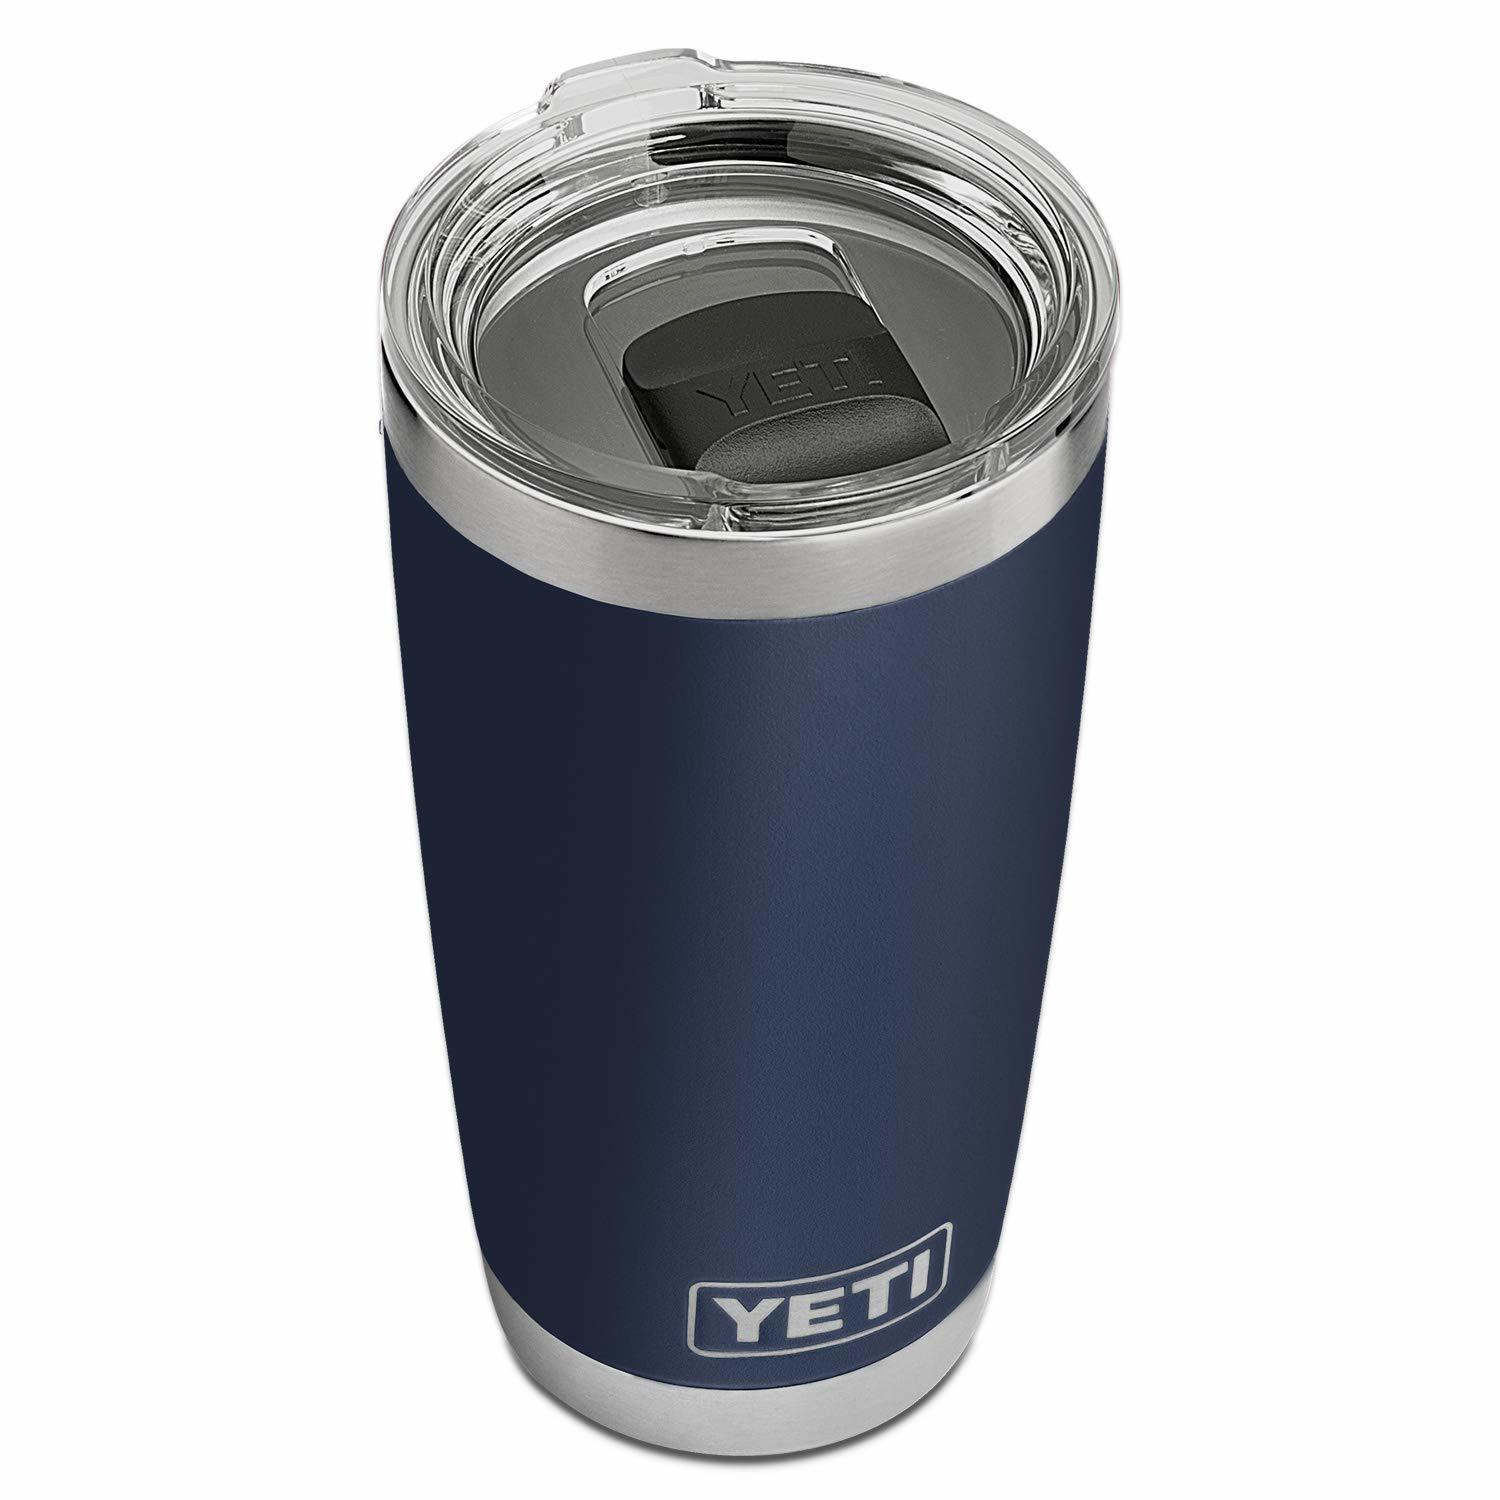 YETI Vacuu Rambler 20 oz Stainless Steel Vacuum Insulated Tumbler